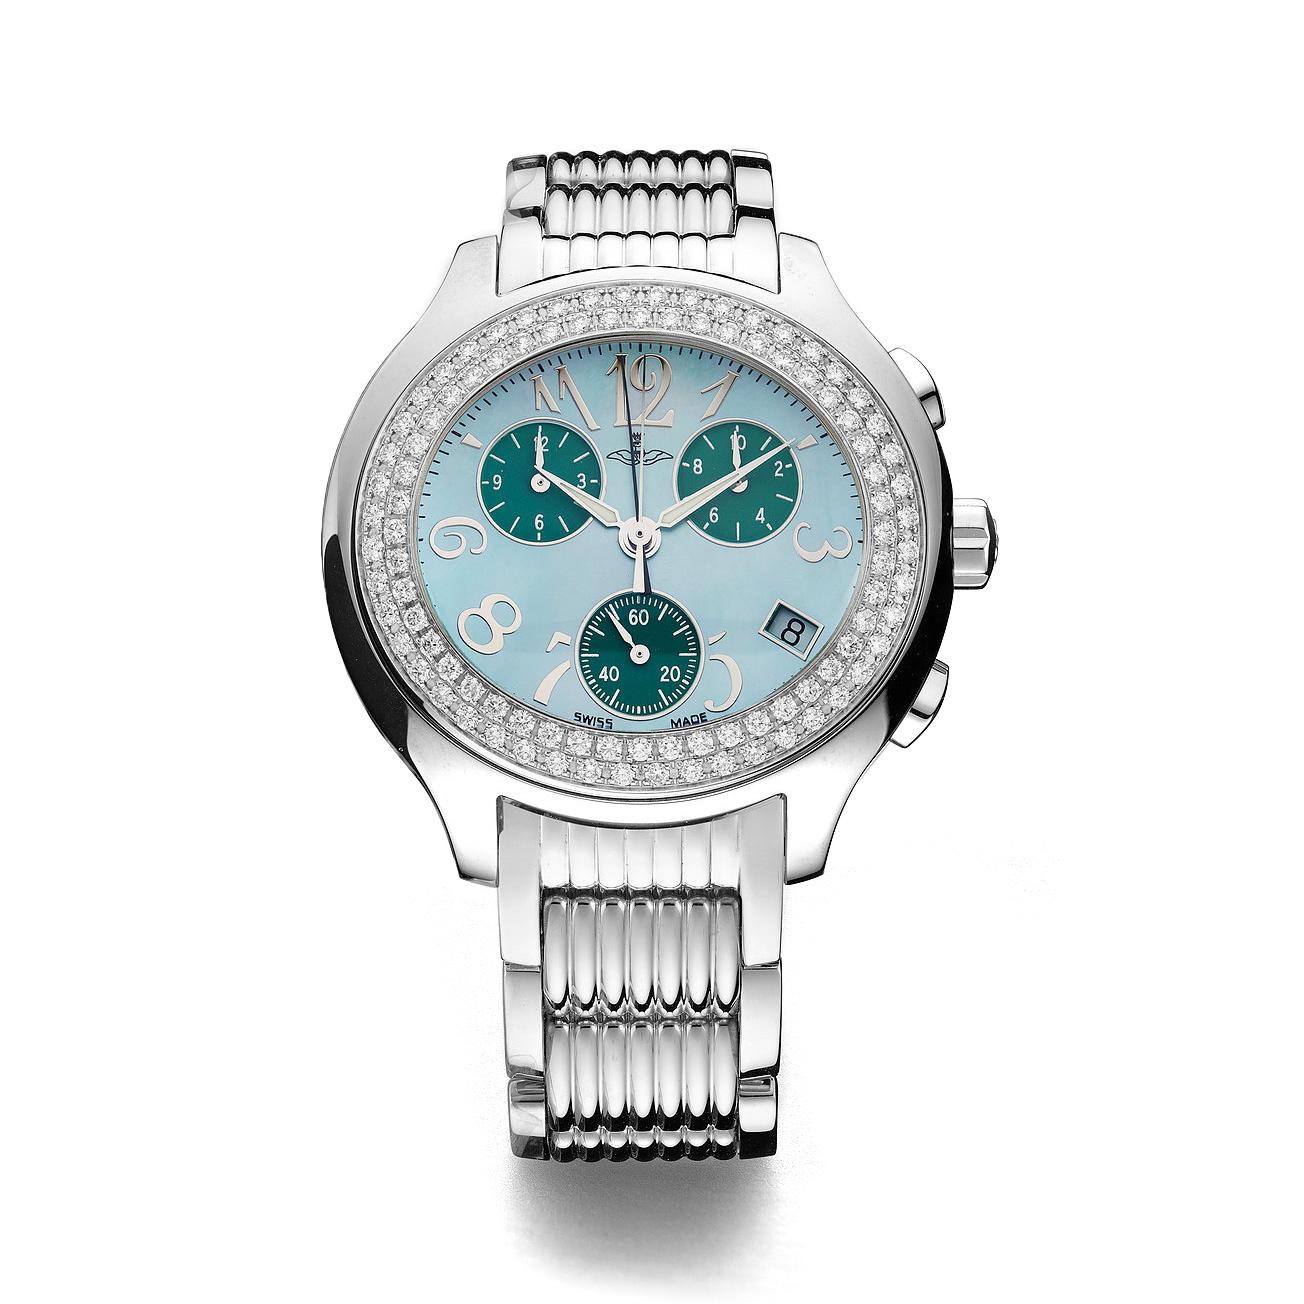 Montre chronographe en acier lunette sertie de 120 diamants 1.61 cts vert cadran en nacre, bracelet en acier mouvement à quartz.